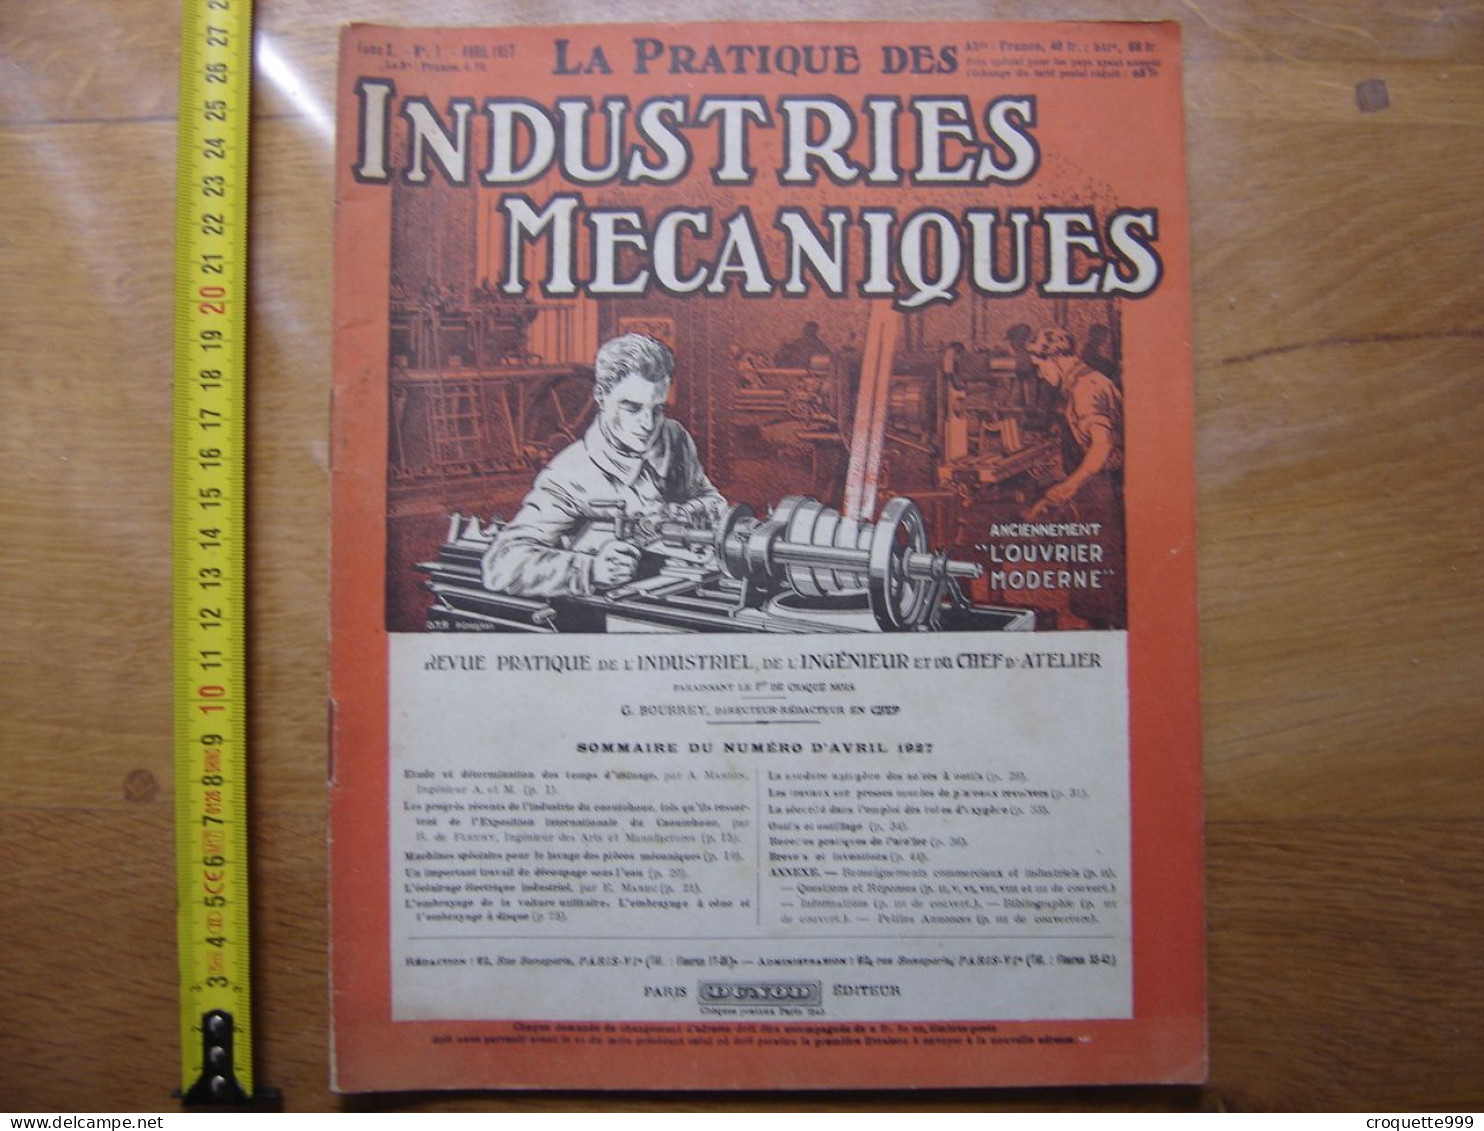 1927 Revue 1 Pratique Des Industries Mecaniques INGENIEUR CONTREMAITRE OUVRIER - Bricolage / Technique